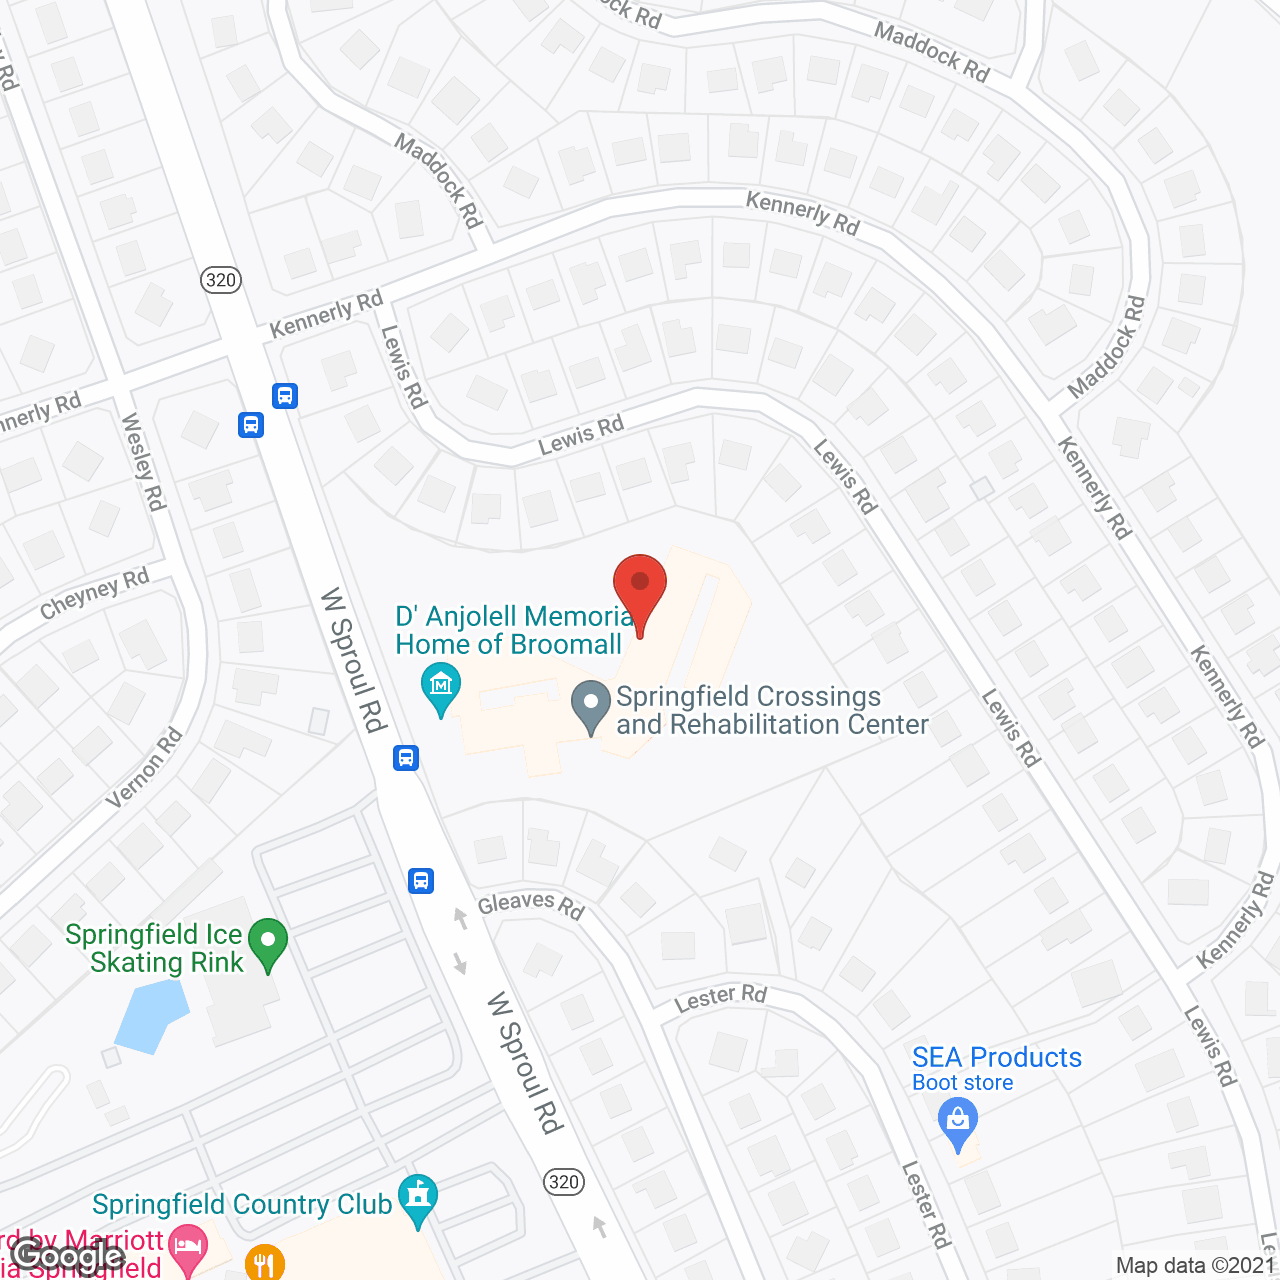 Springfield Crossings in google map